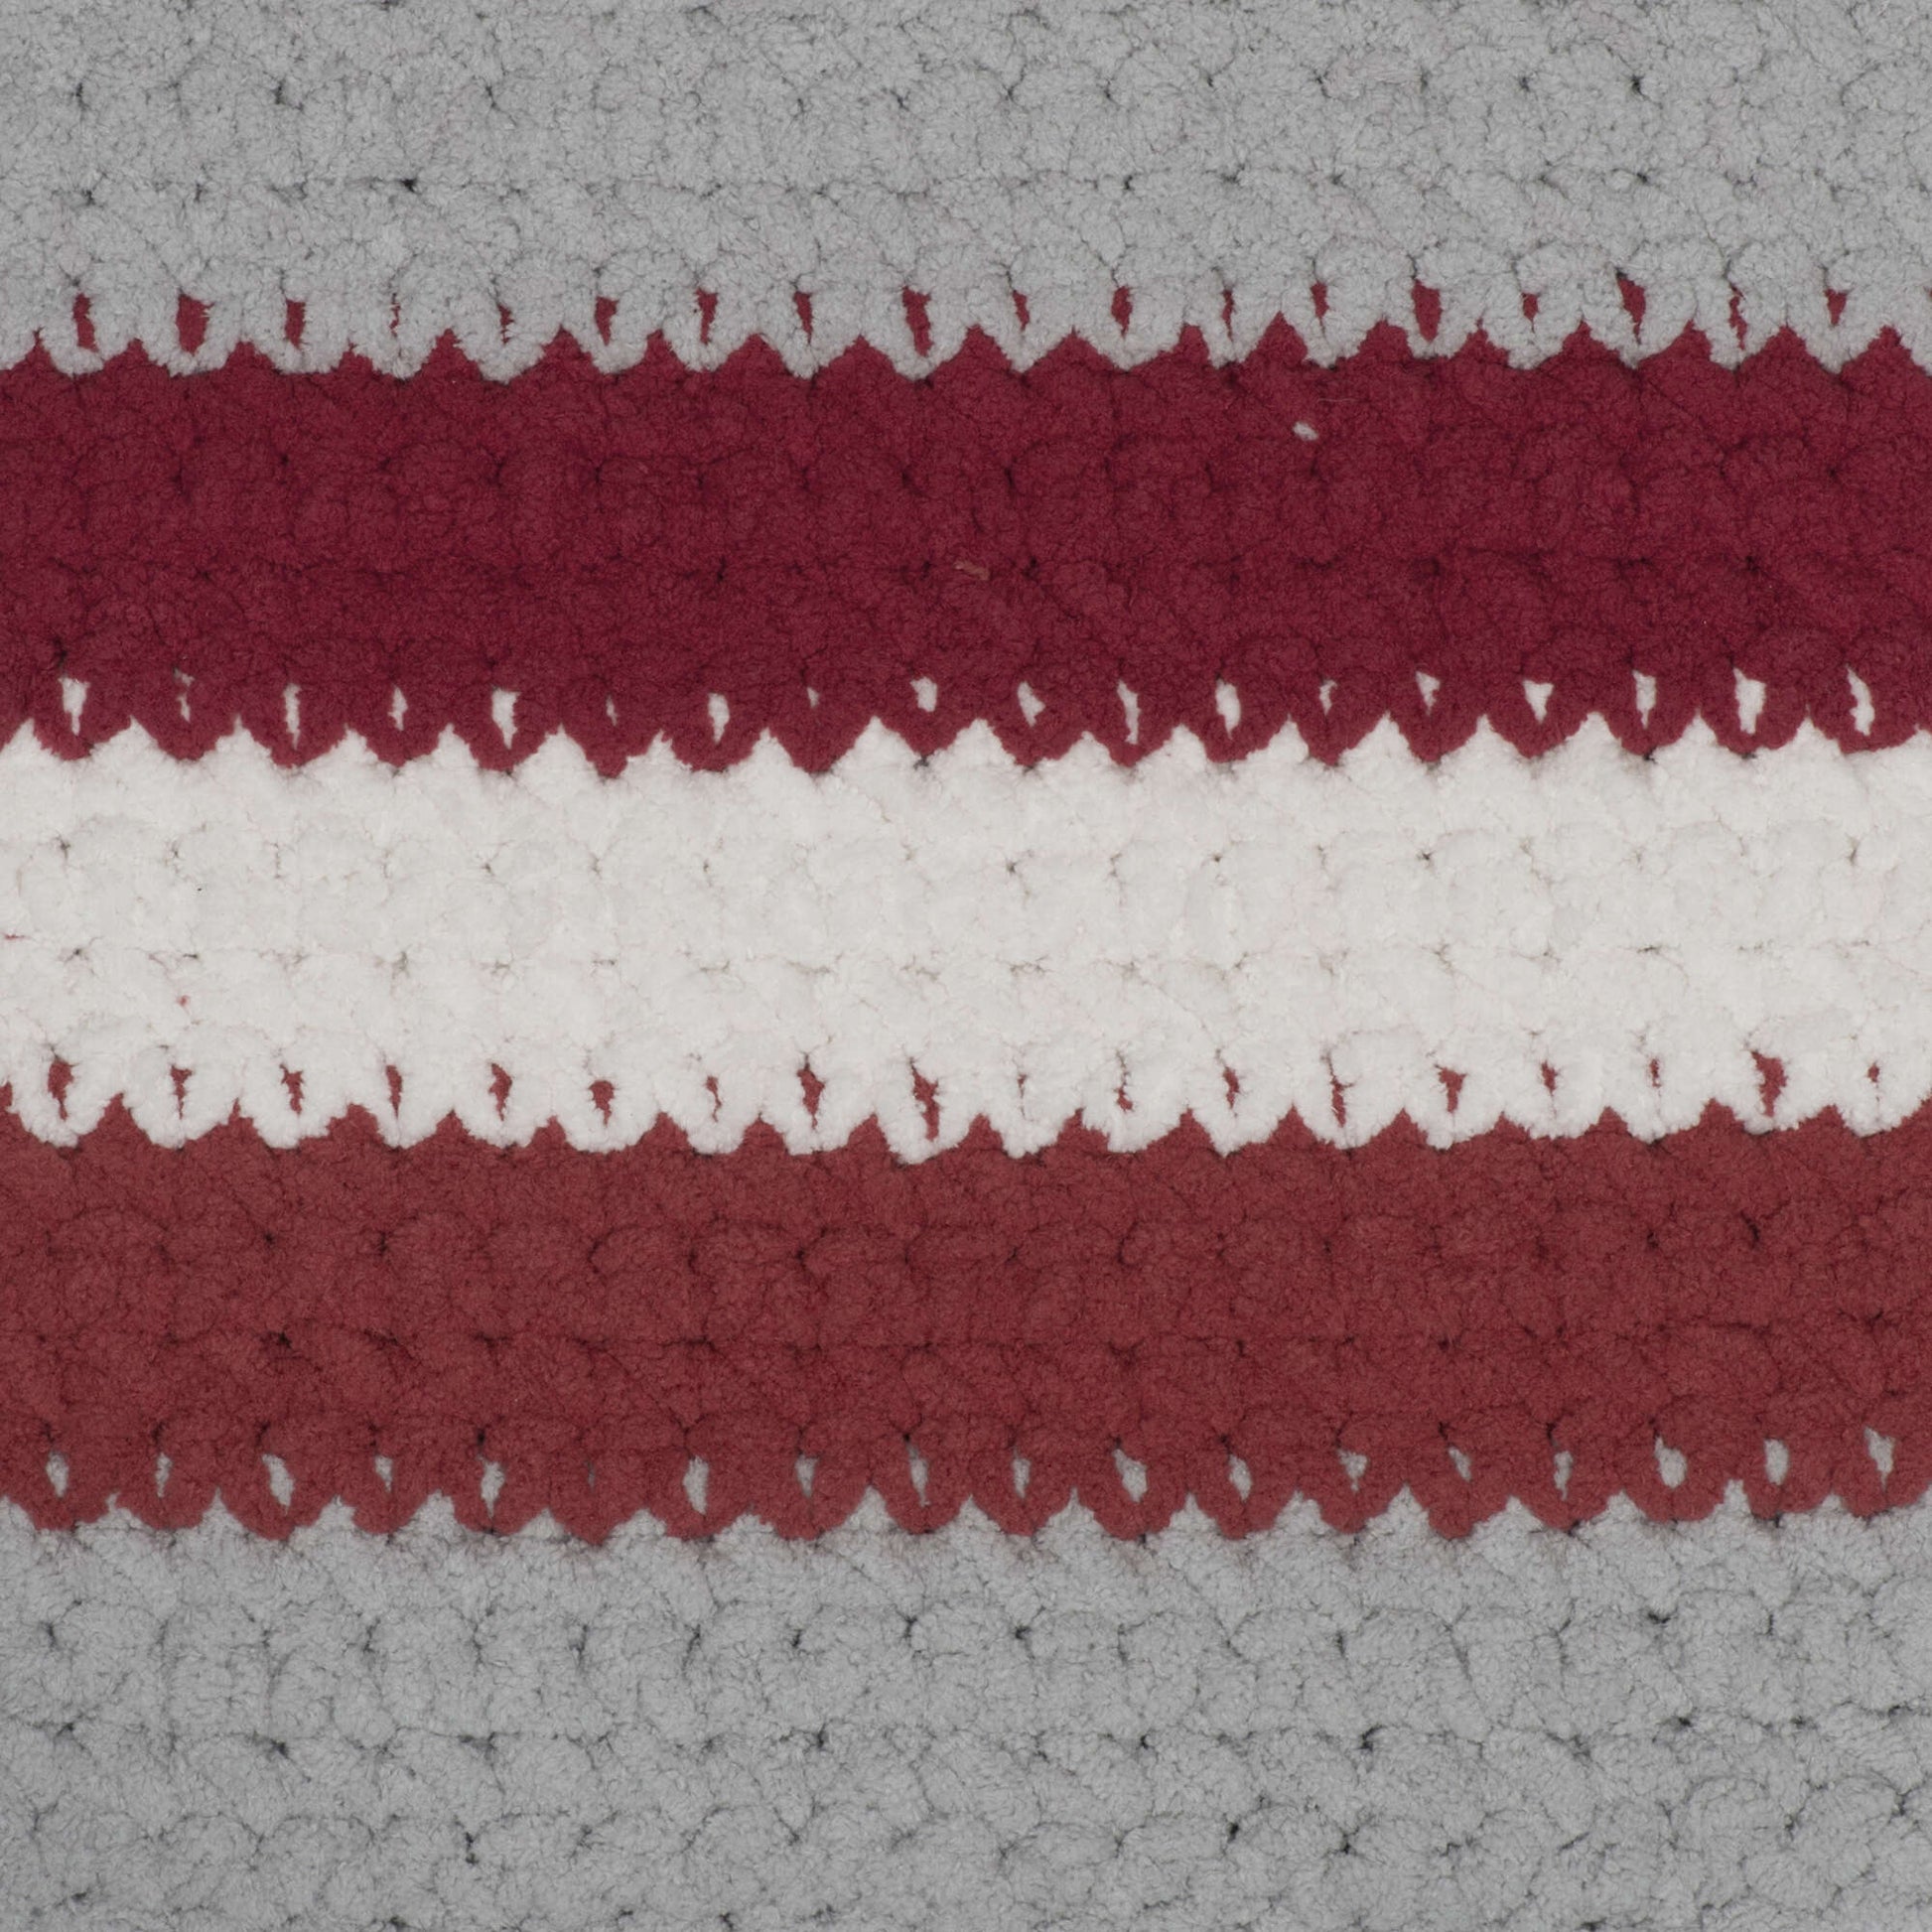 Bernat Blanket Stripes Yarn (300g/10.5oz)